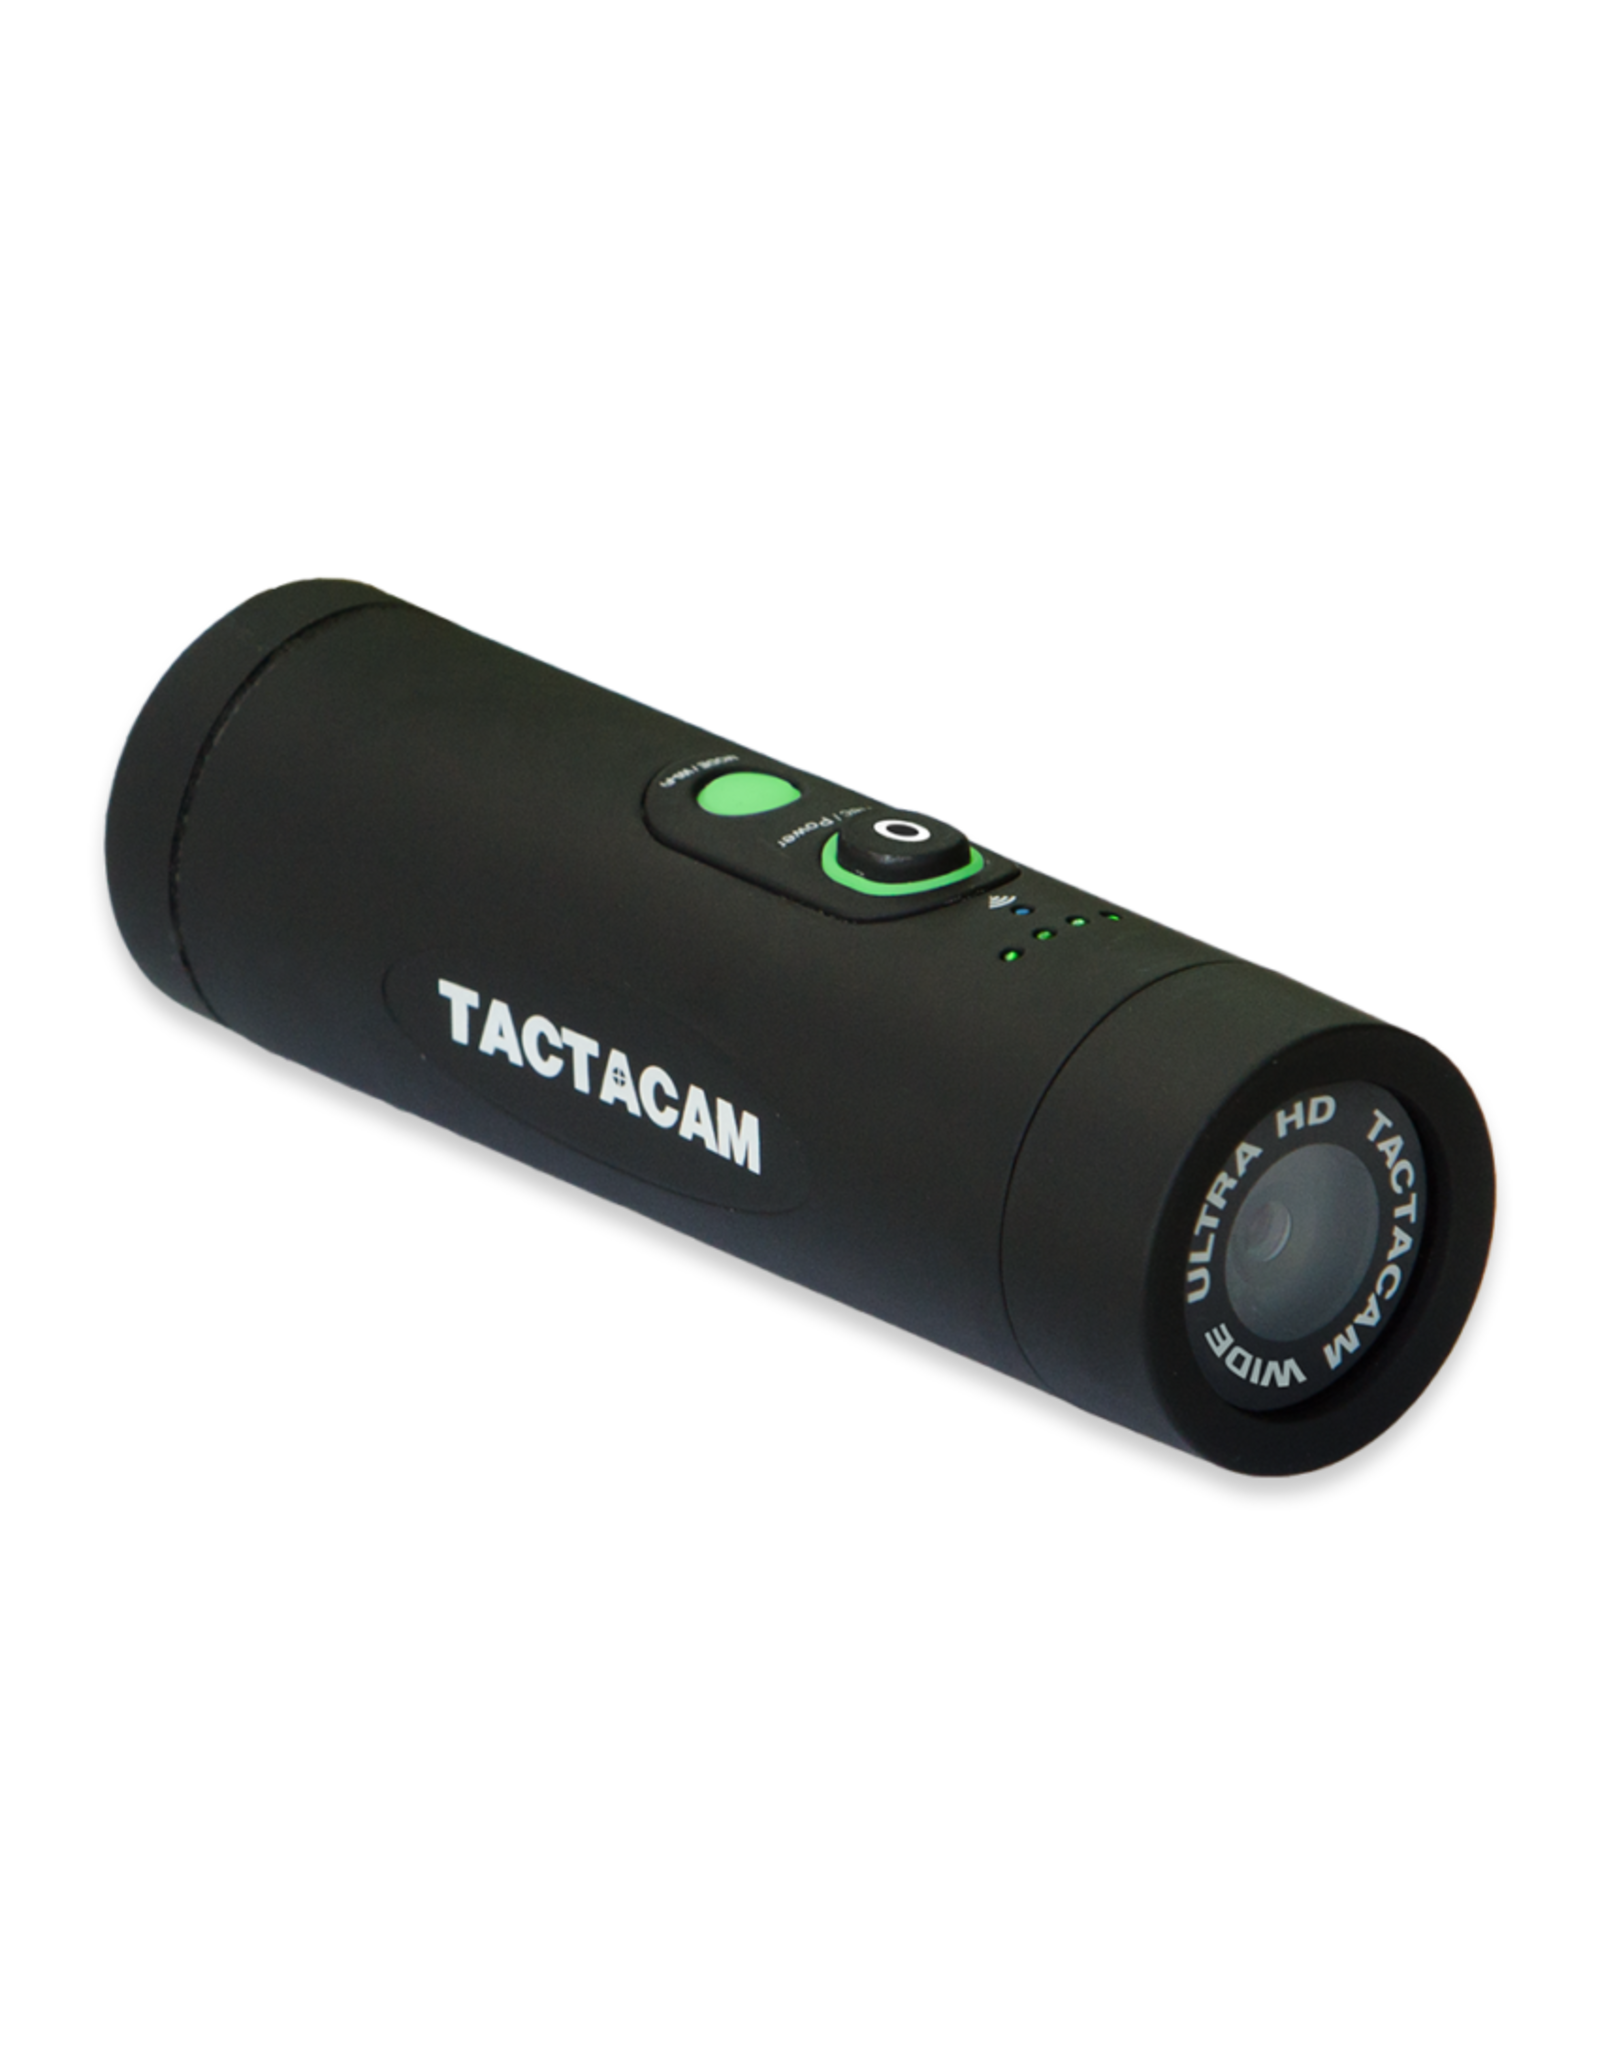 Tactacam Tactacam 5.0 Camera